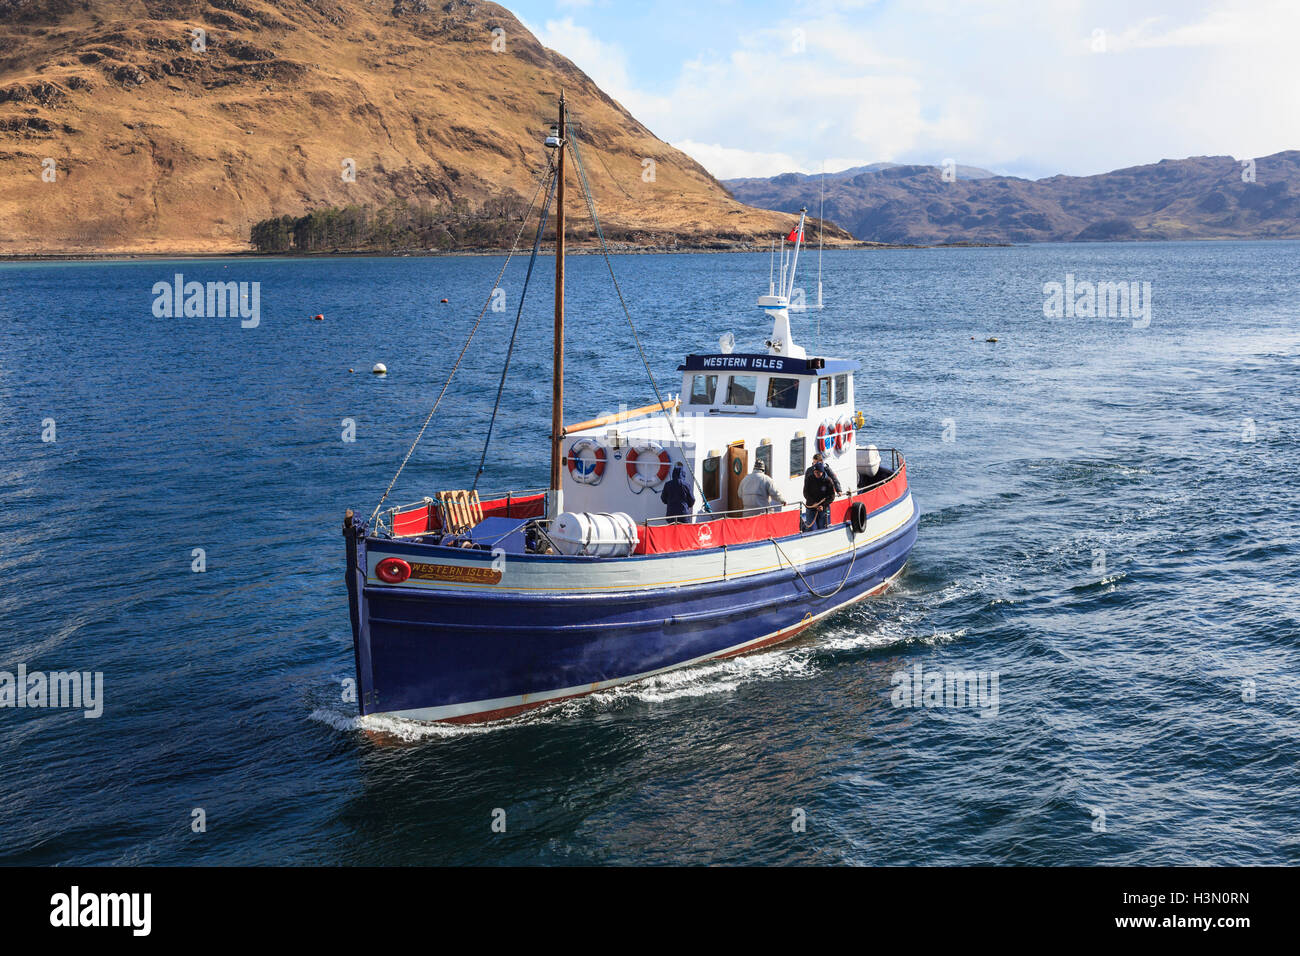 MV Western Isles on Loch Nevis Stock Photo